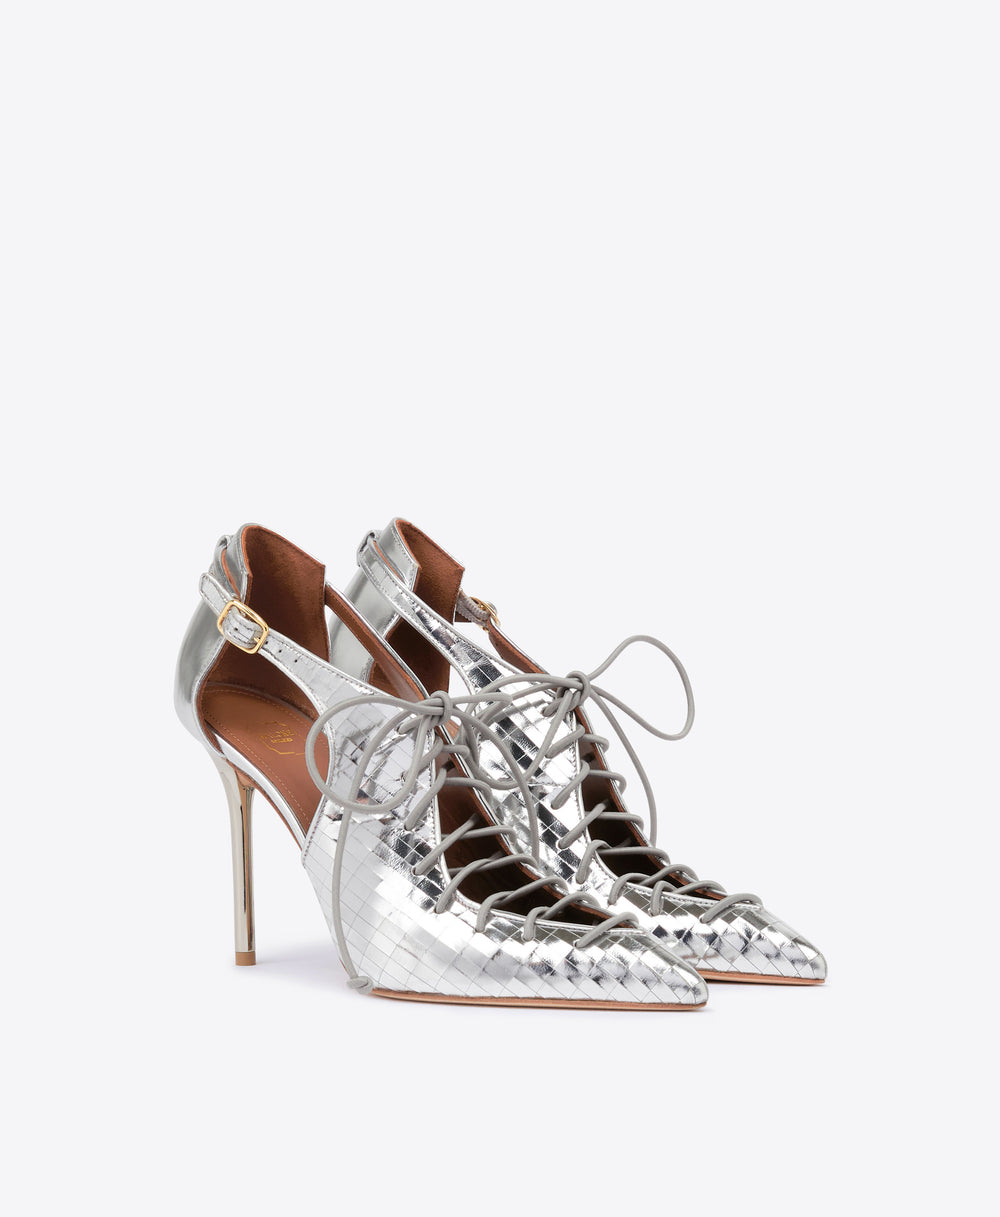 Women's Silver Leather Stiletto Heel Malone Souliers